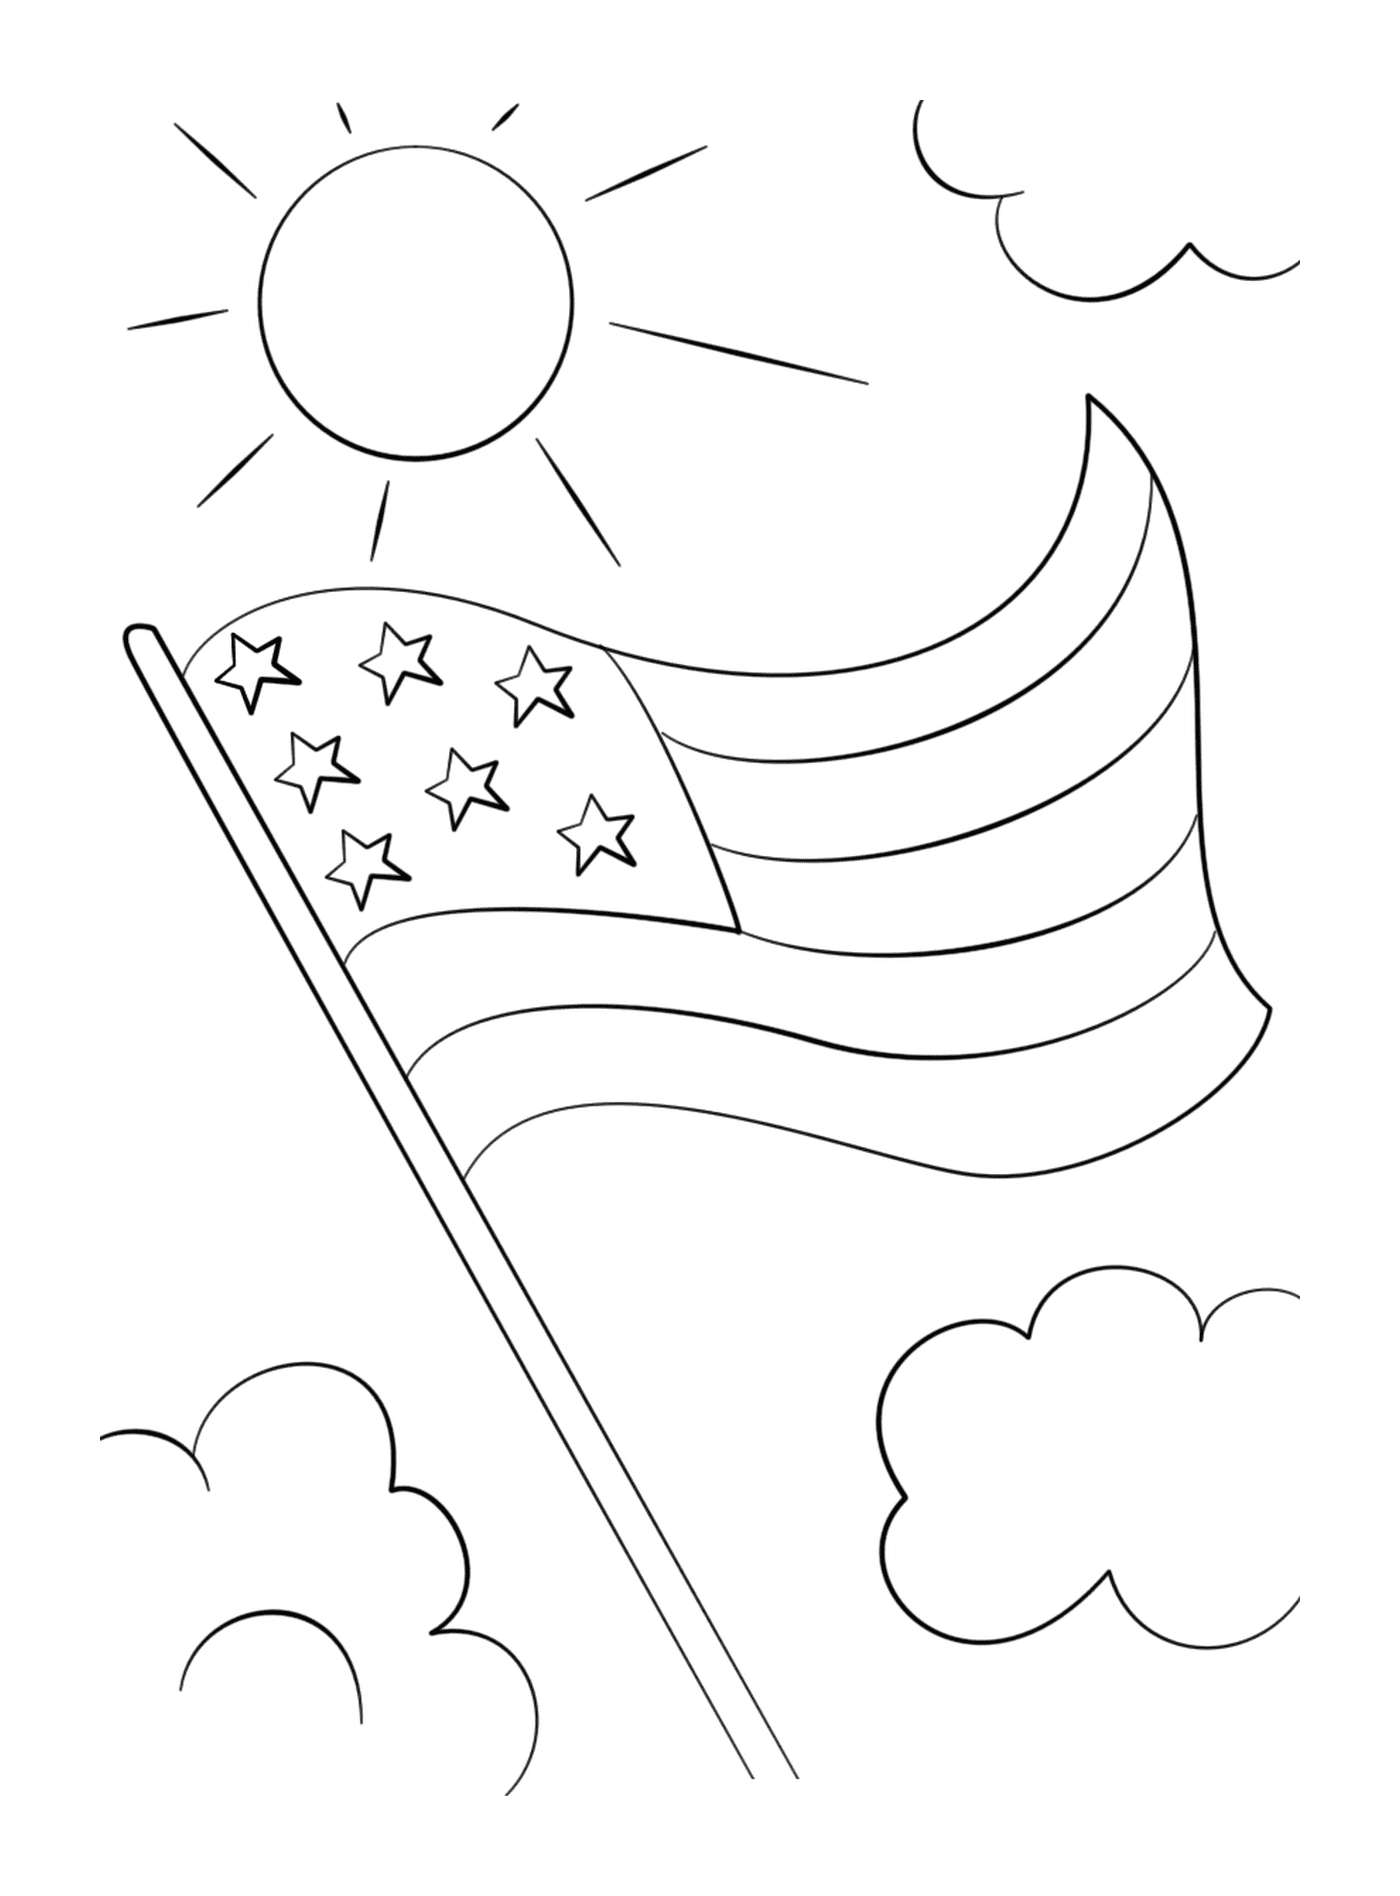  Bandera americana con estrellas flotando en el cielo 